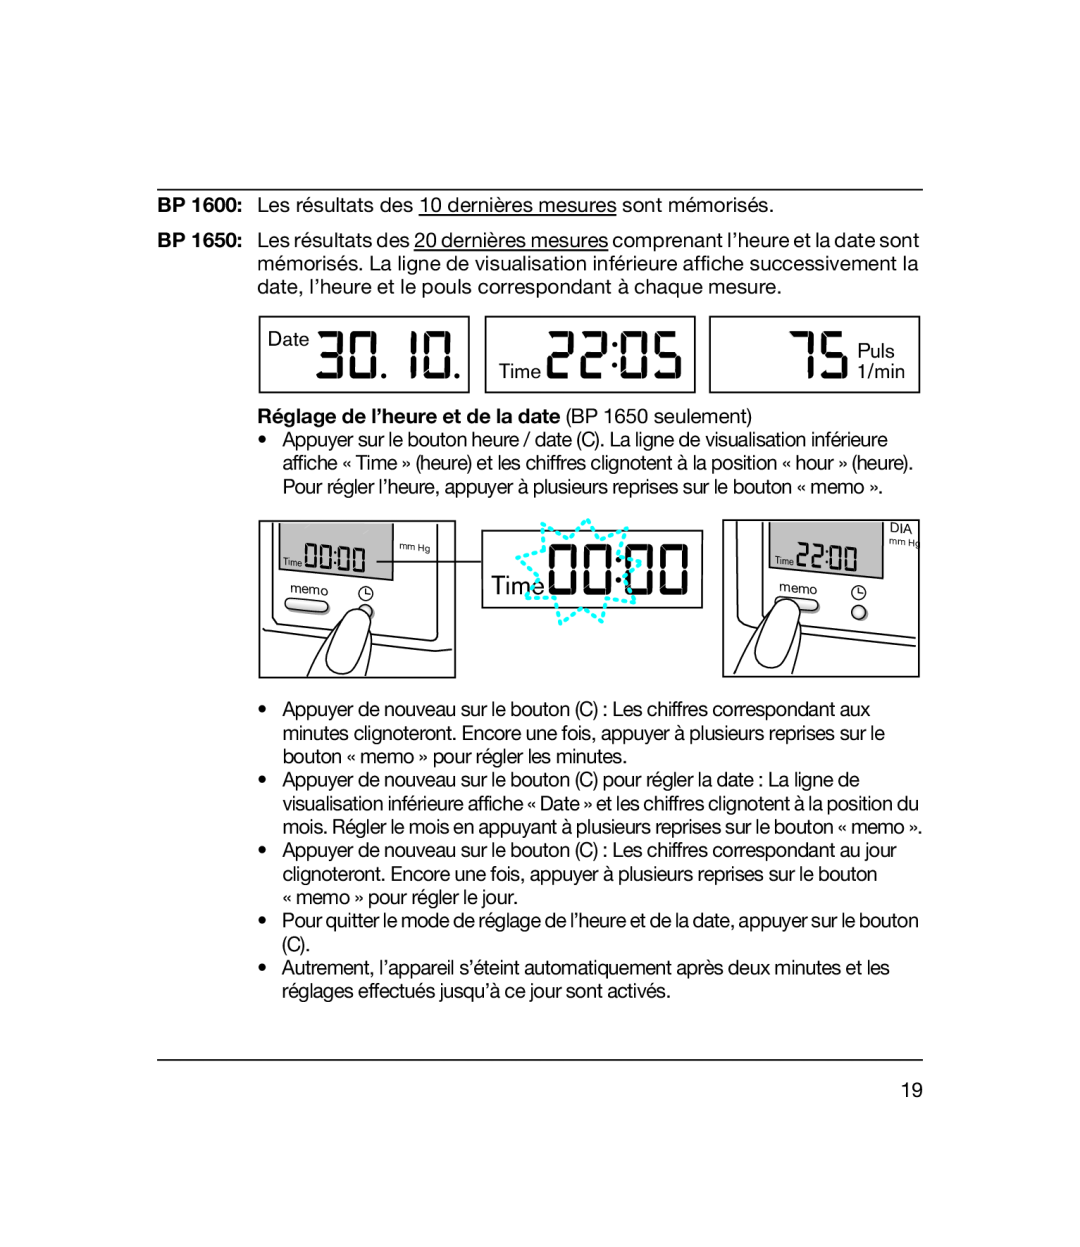 Braun bp1600 manual Time, Réglage de l’heure et de la date BP 1650 seulement 